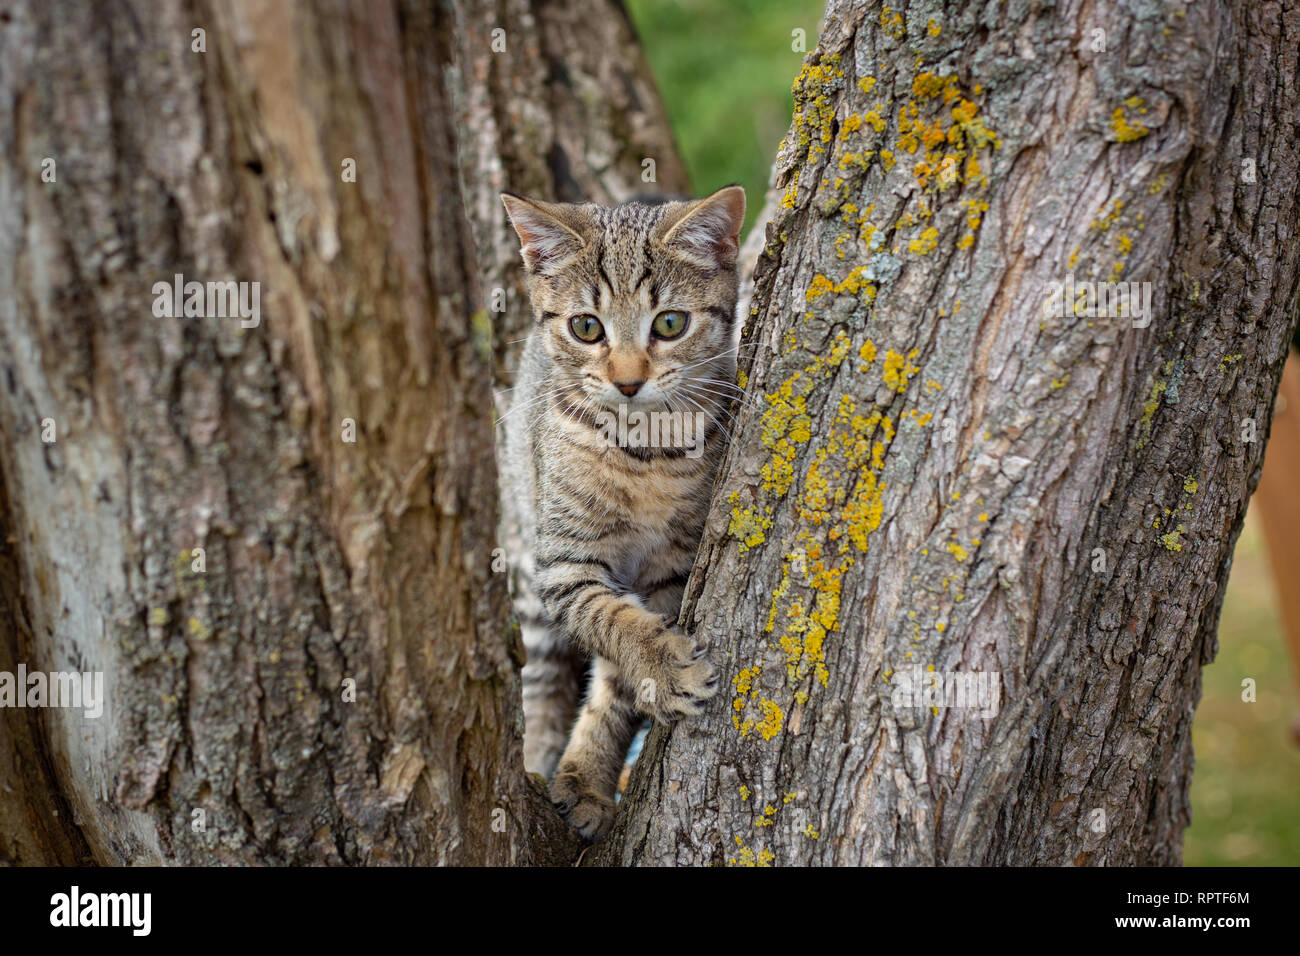 Ein tabby Kätzchen liebt das Spiel in einen Baum und Kratzen an der Rinde am Stamm Stockfoto